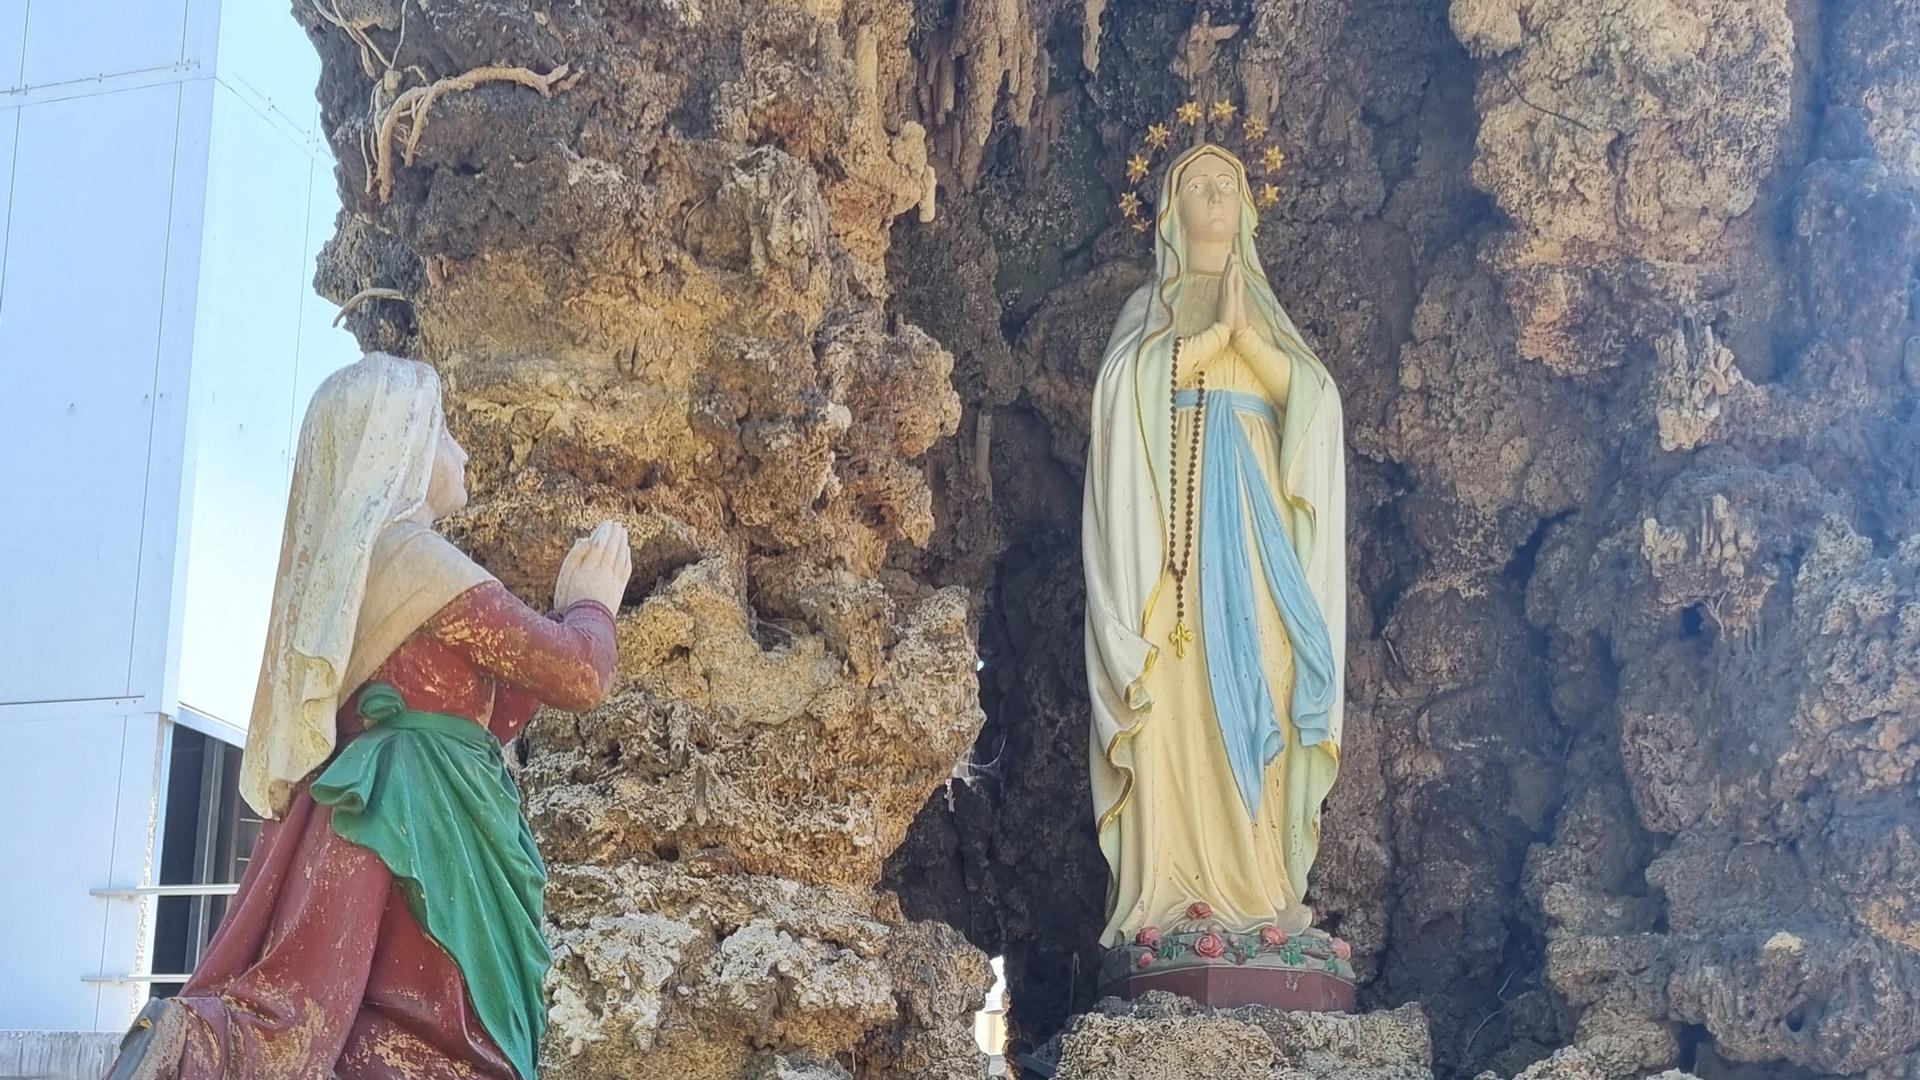 Mariengrotte im Kirchhof der Kirche Sankt Mauritius in Neibsheim. In früheren Tagen floss hier einst Wasser. Die beiden Figuren zeigen Gebet und Heilung.